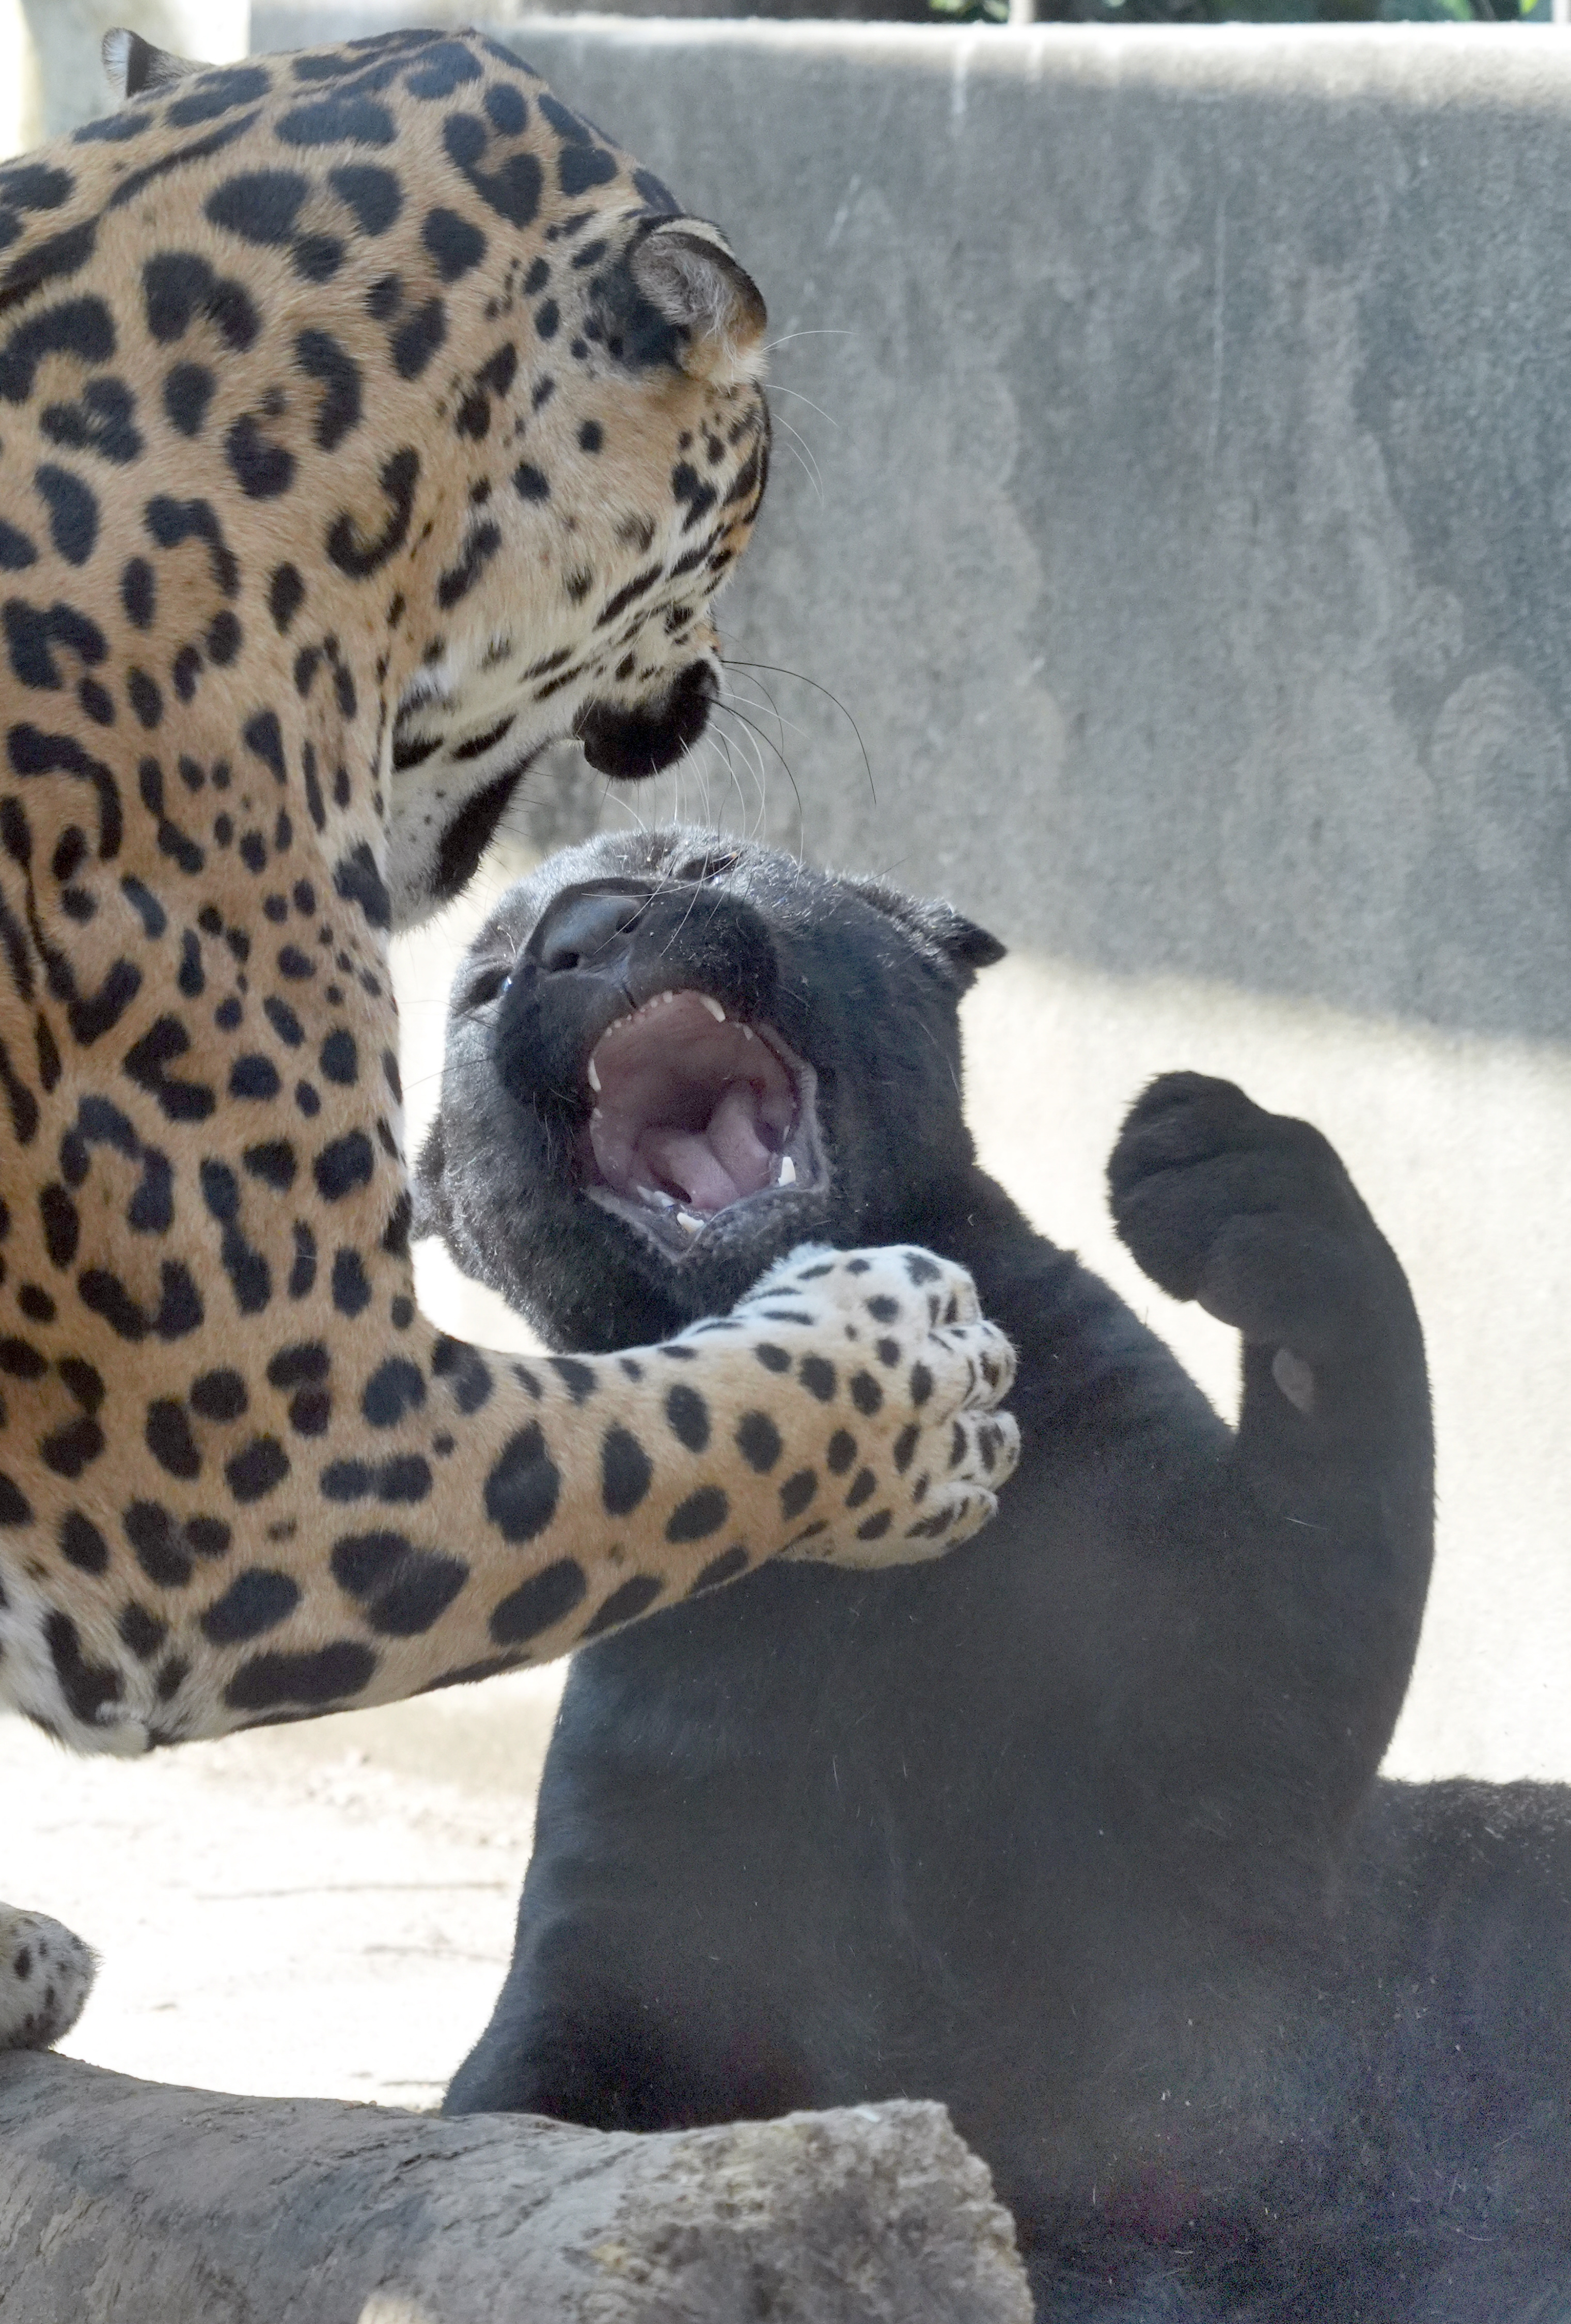 どうぶつ園のニューフェース 大人顔負けの迫力 ジャガーの赤ちゃん 産経ニュース